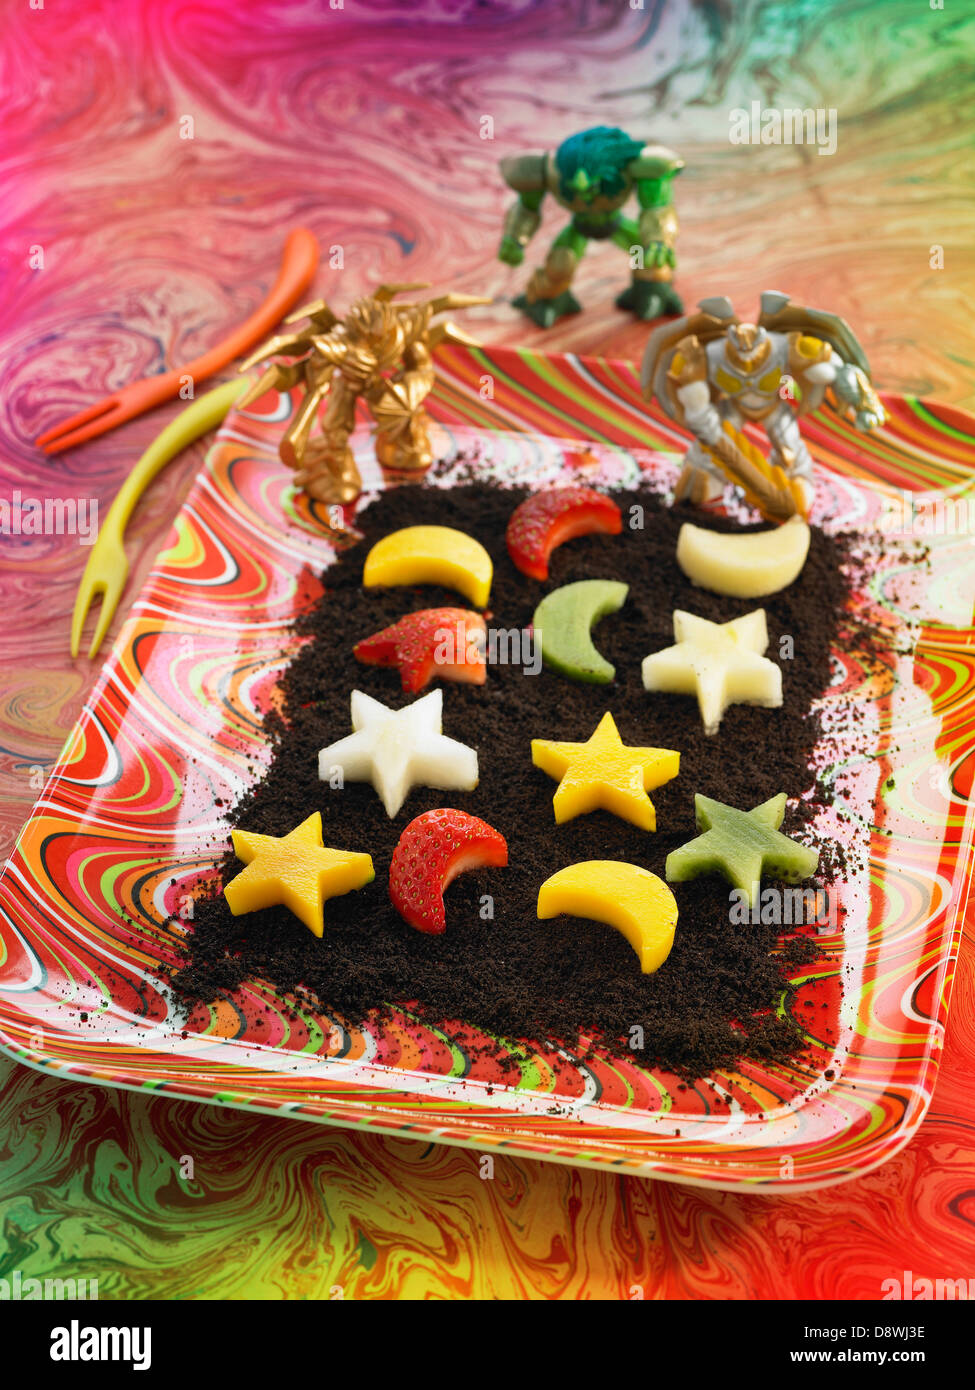 Sterne und Mond-förmigen frisches Obst auf einem Bett aus Krümeln Schokoladenkekse Stockfoto